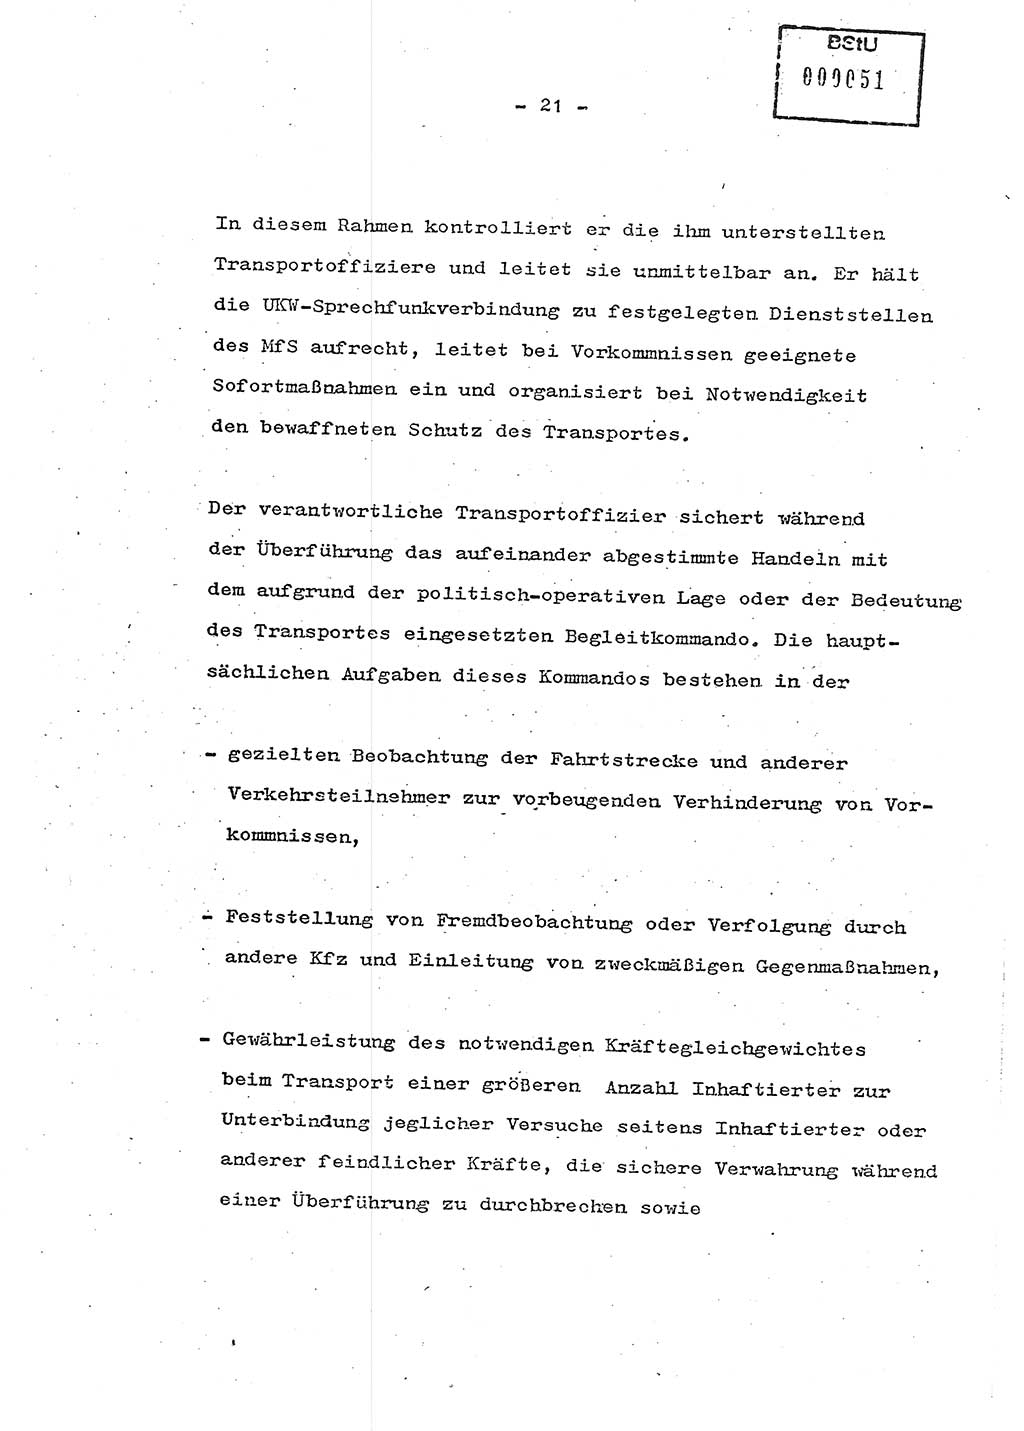 Schulungsmaterial Exemplar-Nr.: 7, Ministerium für Staatssicherheit [Deutsche Demokratische Republik (DDR)], Abteilung (Abt.) ⅩⅣ, Berlin 1986, Seite 21 (Sch.-Mat. Expl. 7 MfS DDR Abt. ⅩⅣ /86 1986, S. 21)